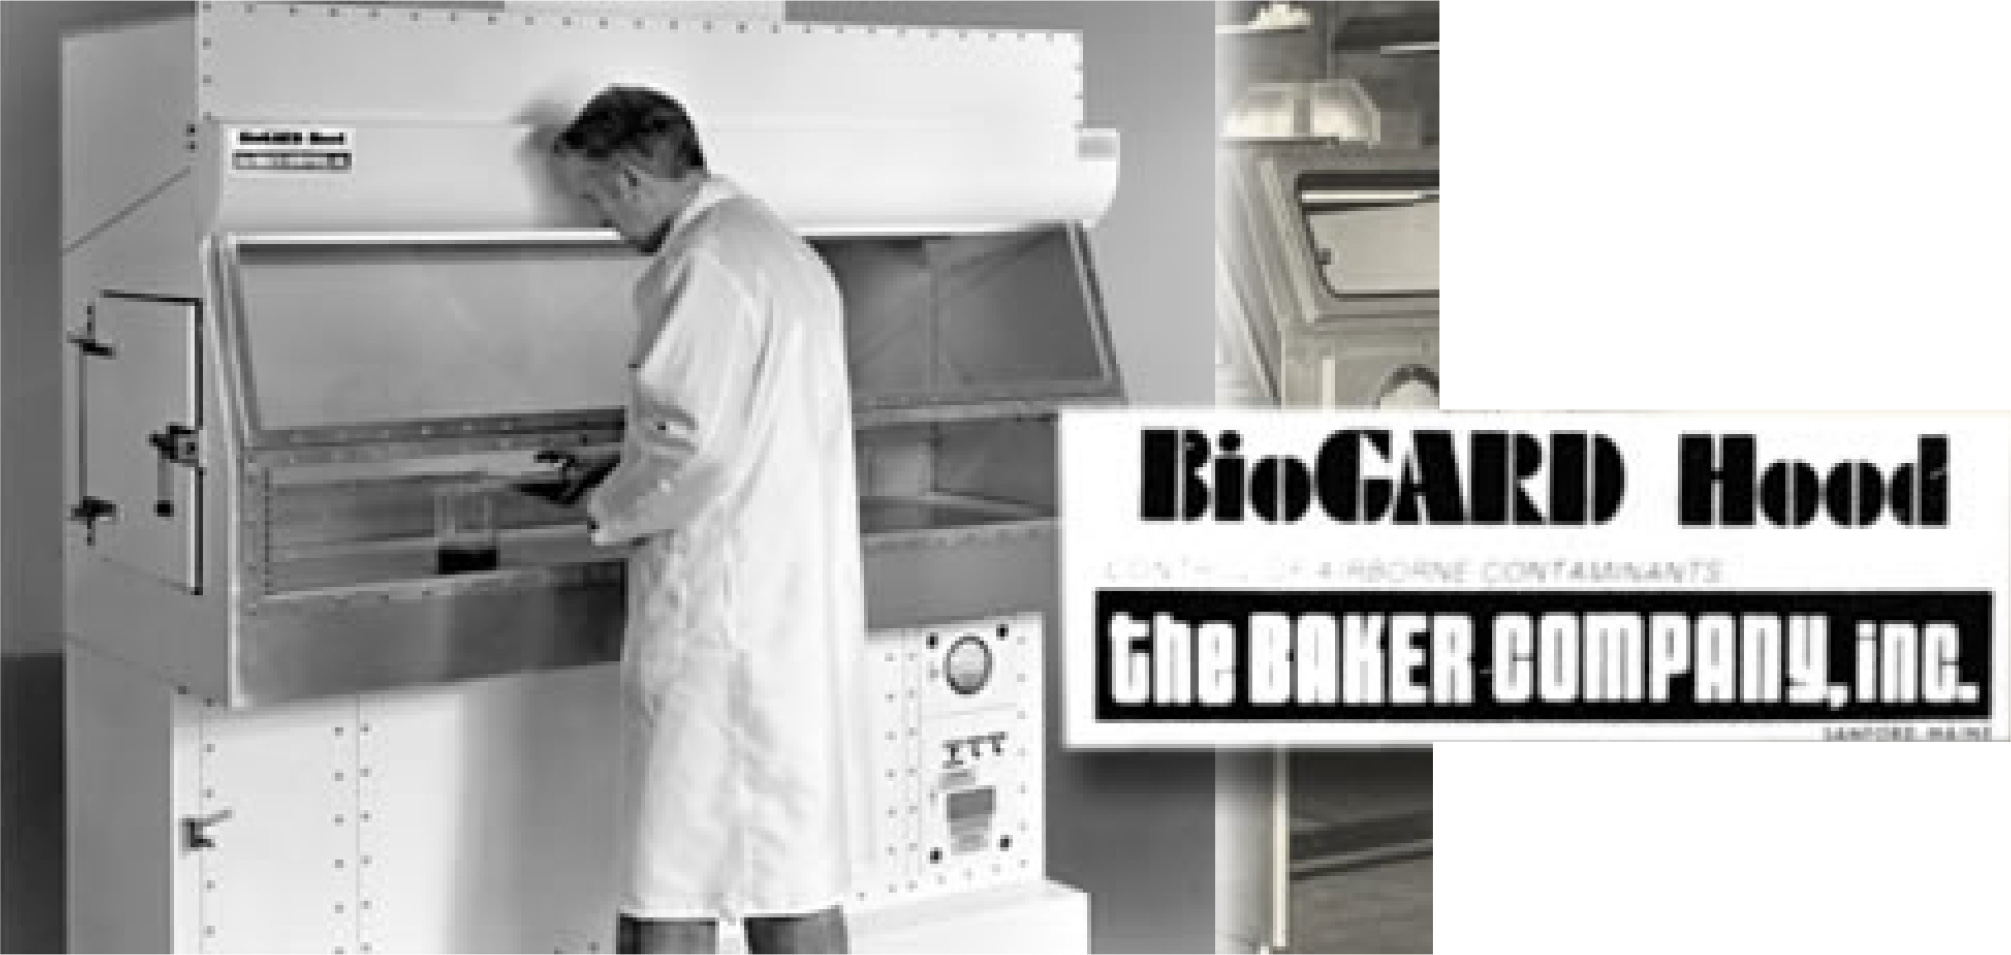 BioGARD Hood Advertisement